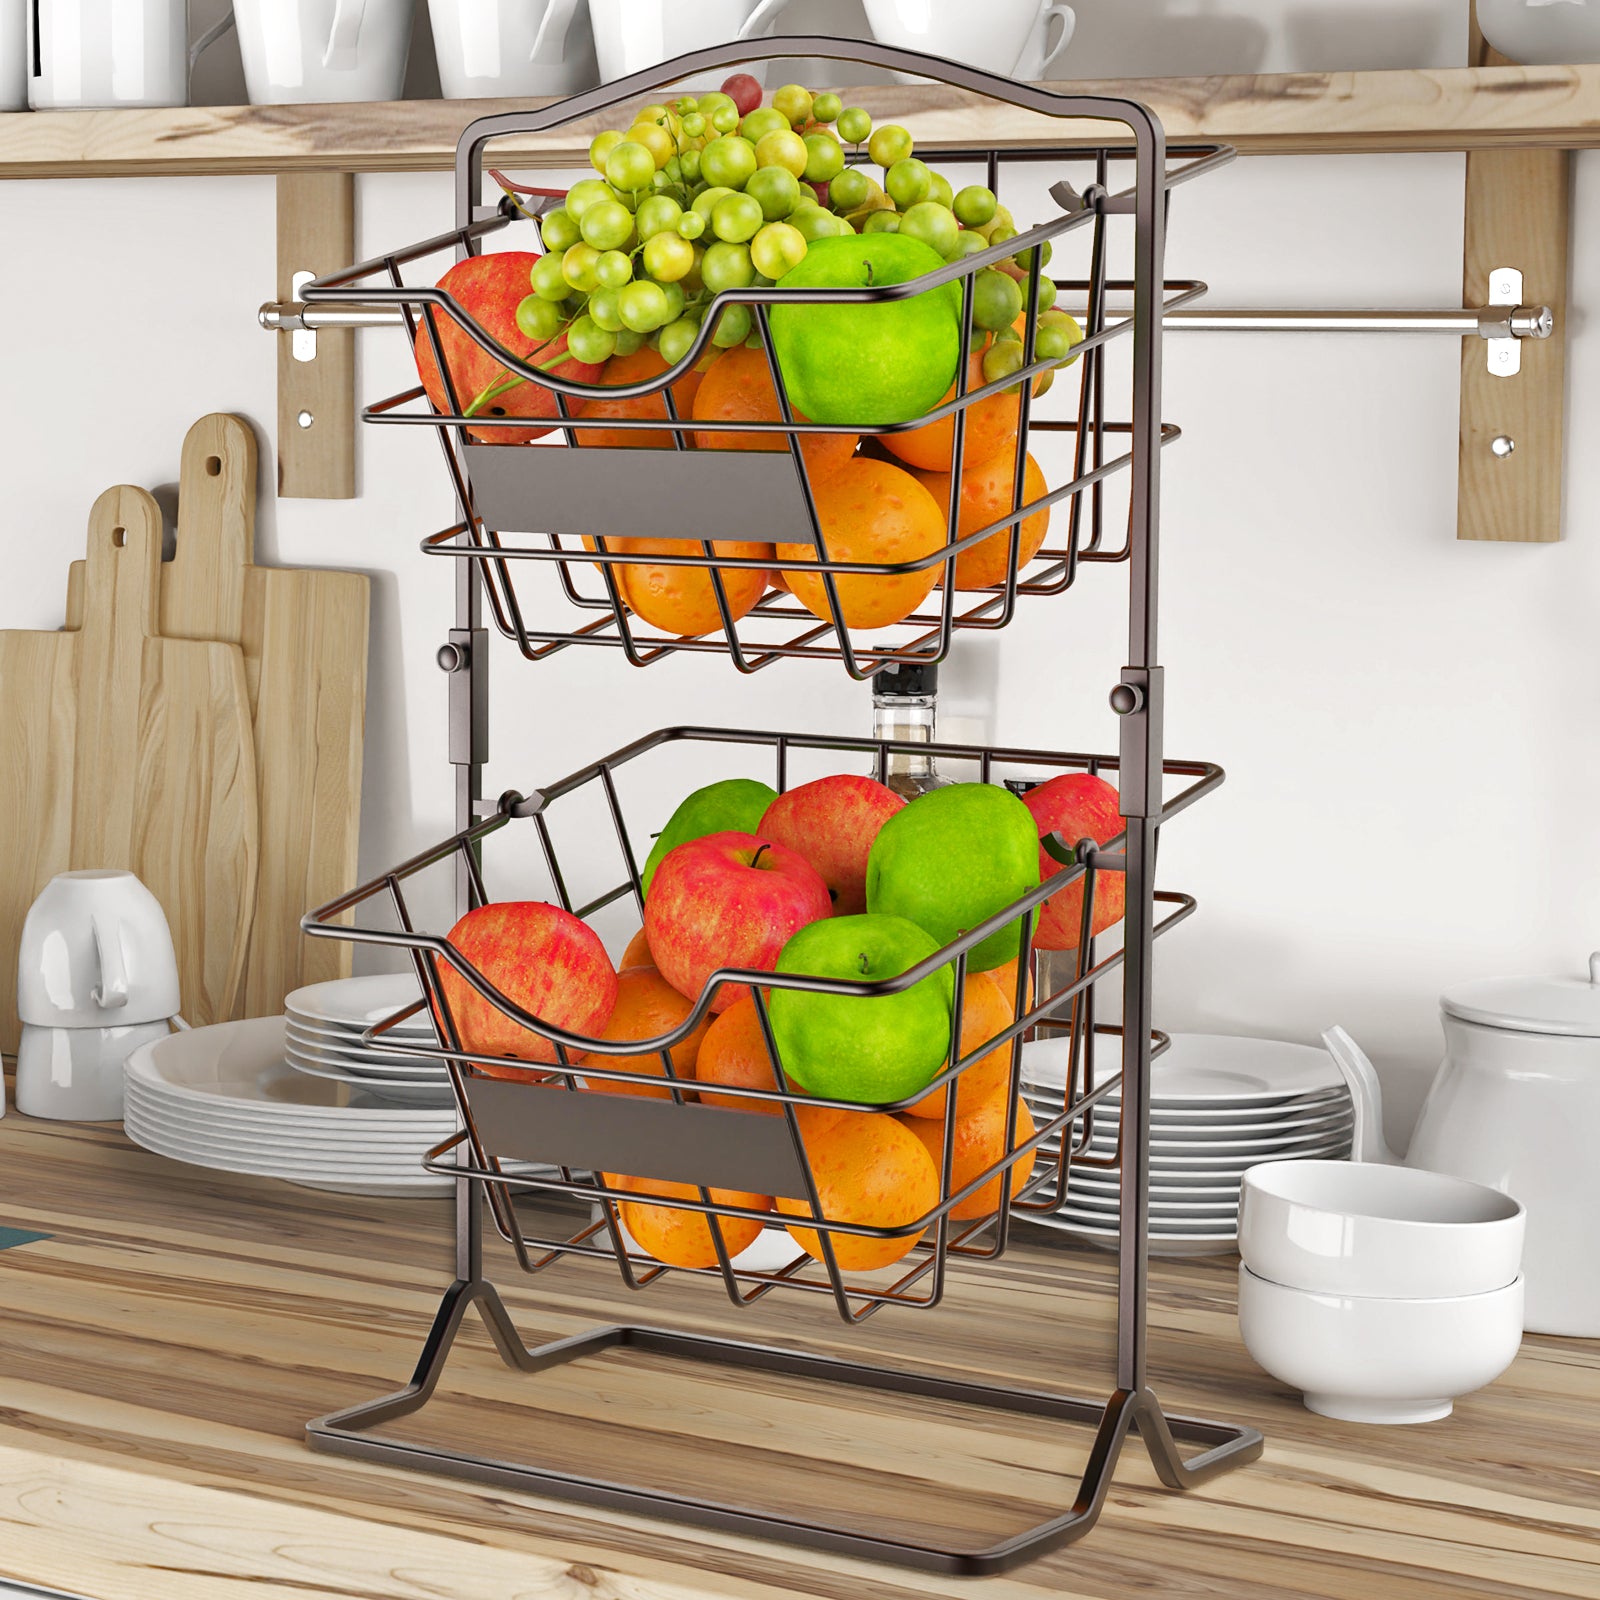 Fruit Basket For Kitchen - Foter